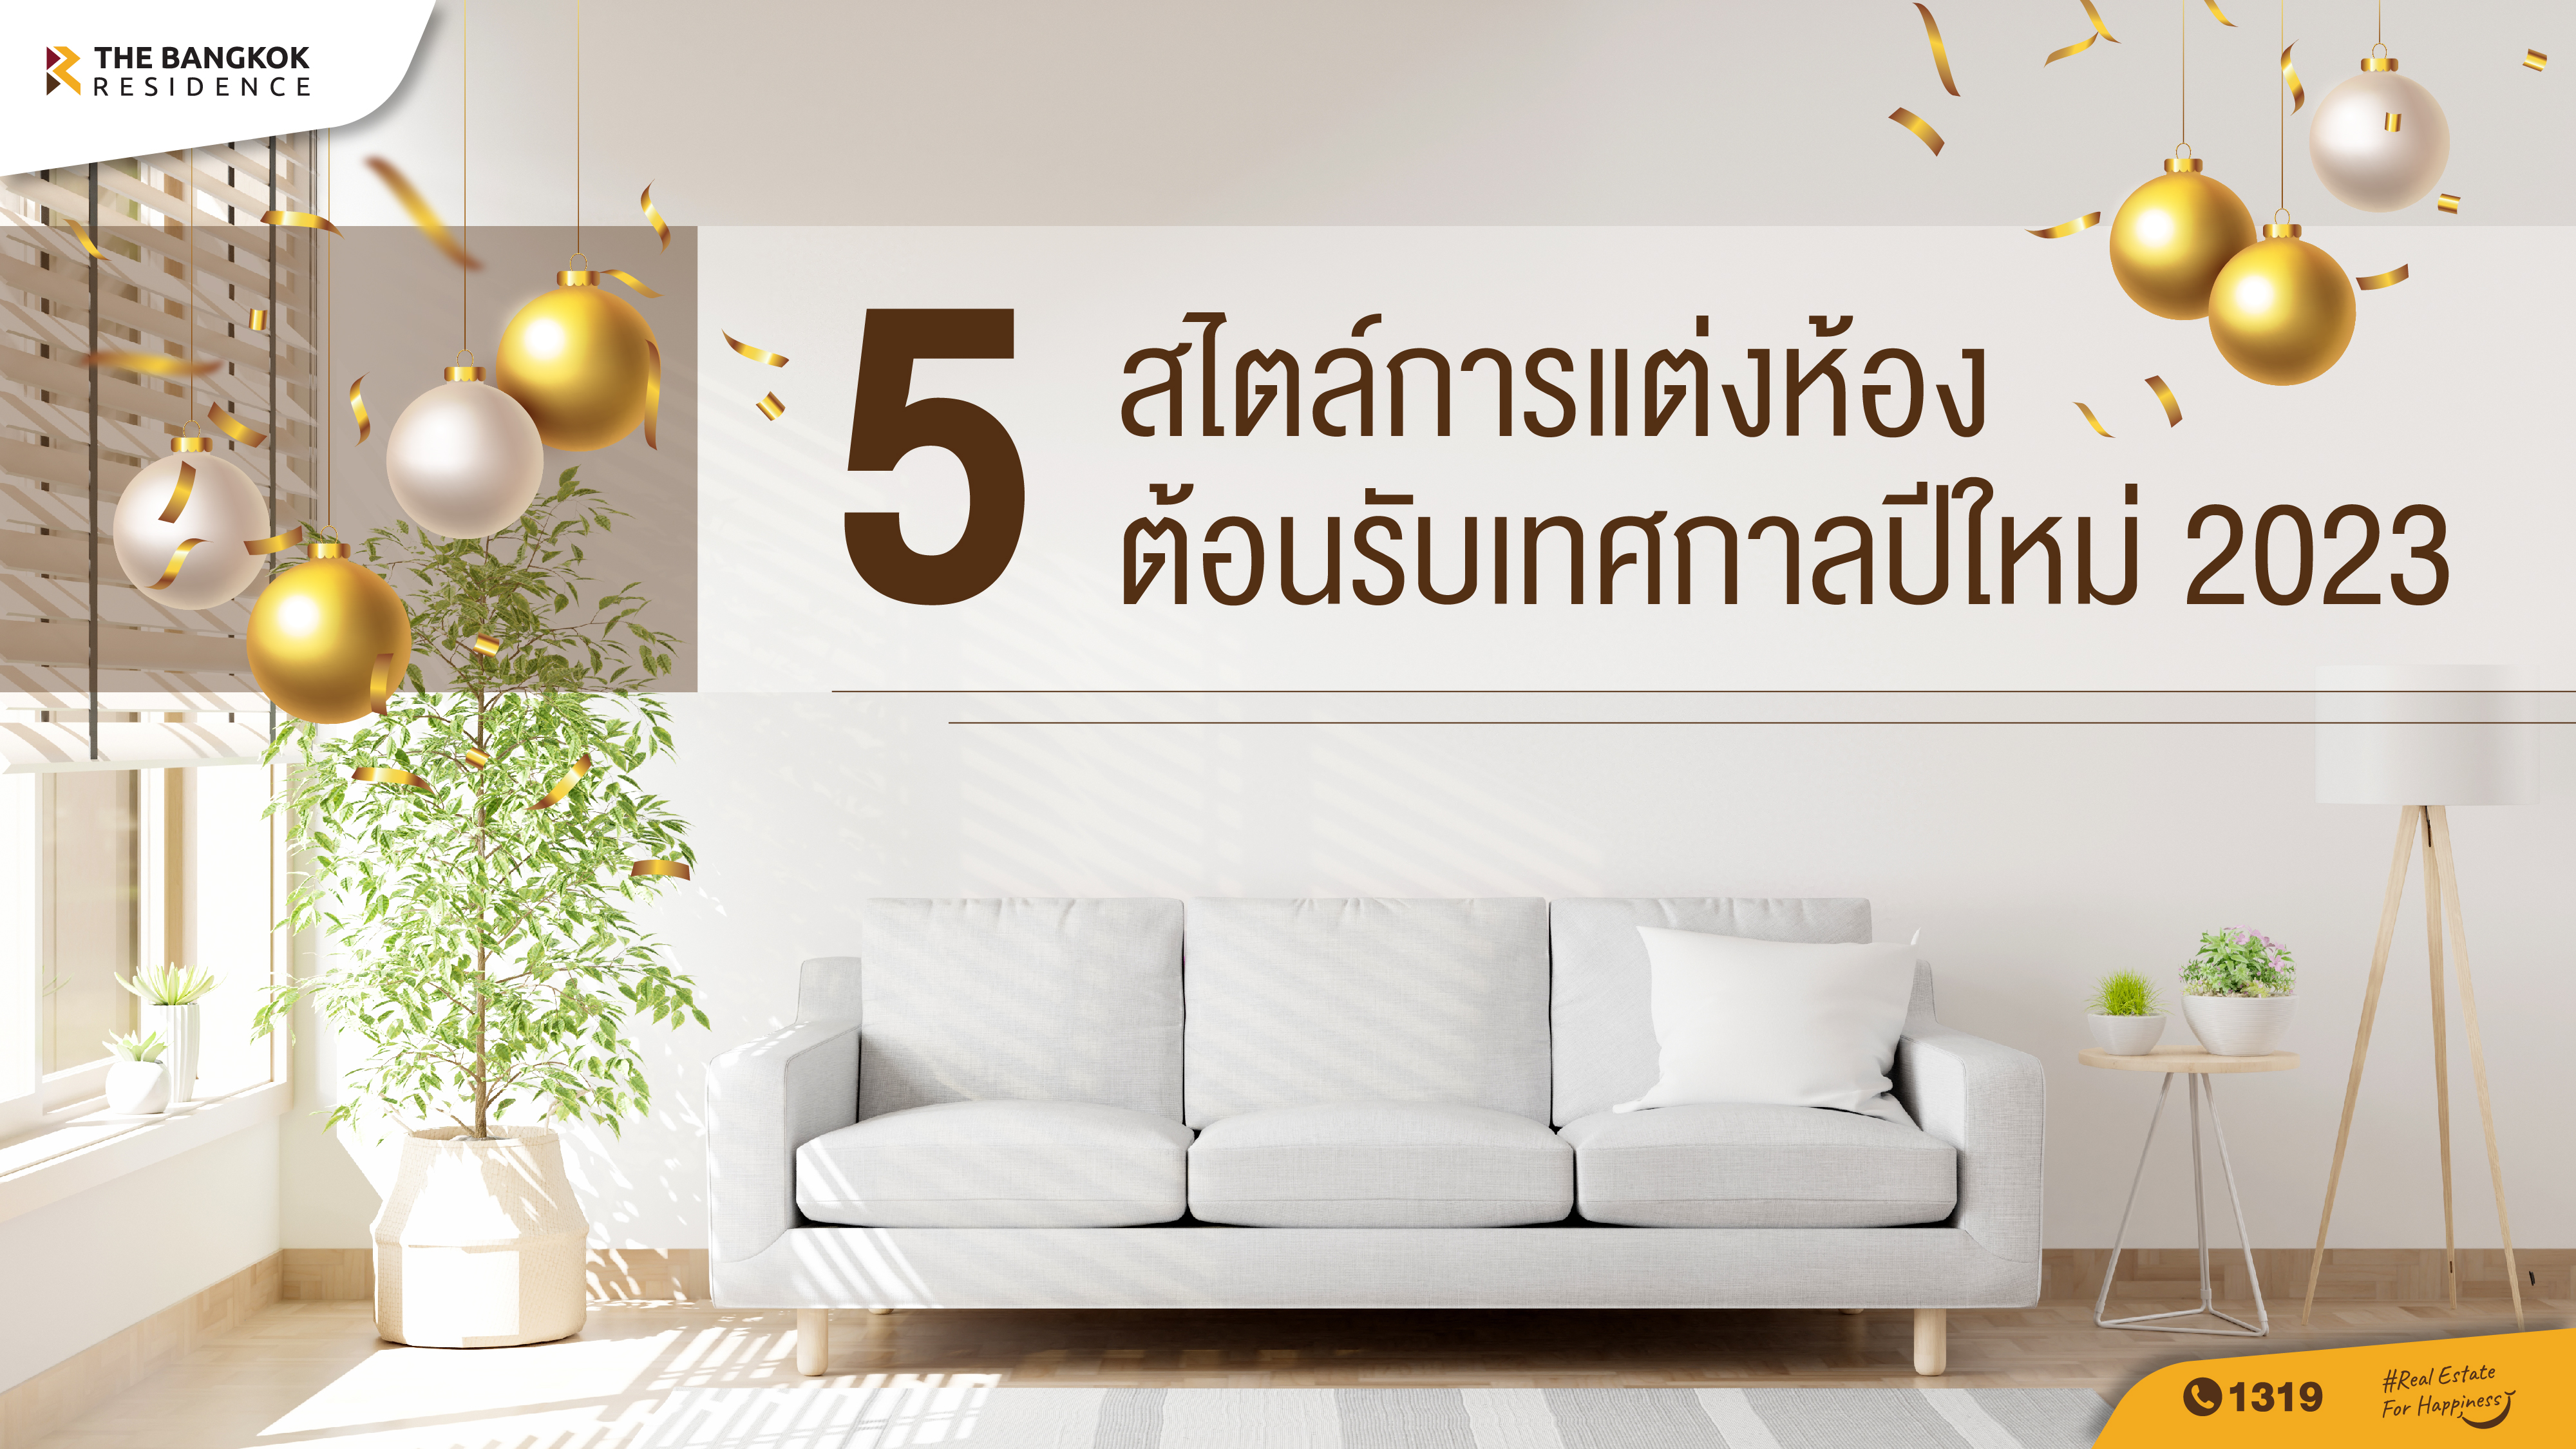 5 ไอเดีย แต่งห้องต้อนรับเทศกาลปีใหม่ 2023  มาสนุกไปกับการตกแต่งมุมโปรดในห้องของคุณ ต้อนรับปีกระต่าย 2023 ปีแห่งความร่าเริง สนุกสนาน ชาว The bangkok residence เลยอยากชวนมาแต่งแต้มให้ห้องแสนเรียบง่าย กลายเป็นห้องที่เต็มไปด้วยสีสัน ไม่ว่าจะเพิ่มเฟอร์นิเจอร์ตามเทรนด์ ทาสีปรับสมดุล หรือหยิบจับของแต่งบ้านมาใส่ ตามสไตล์ไหนได้บ้าง เรารวมรวมมาให้แล้ว...